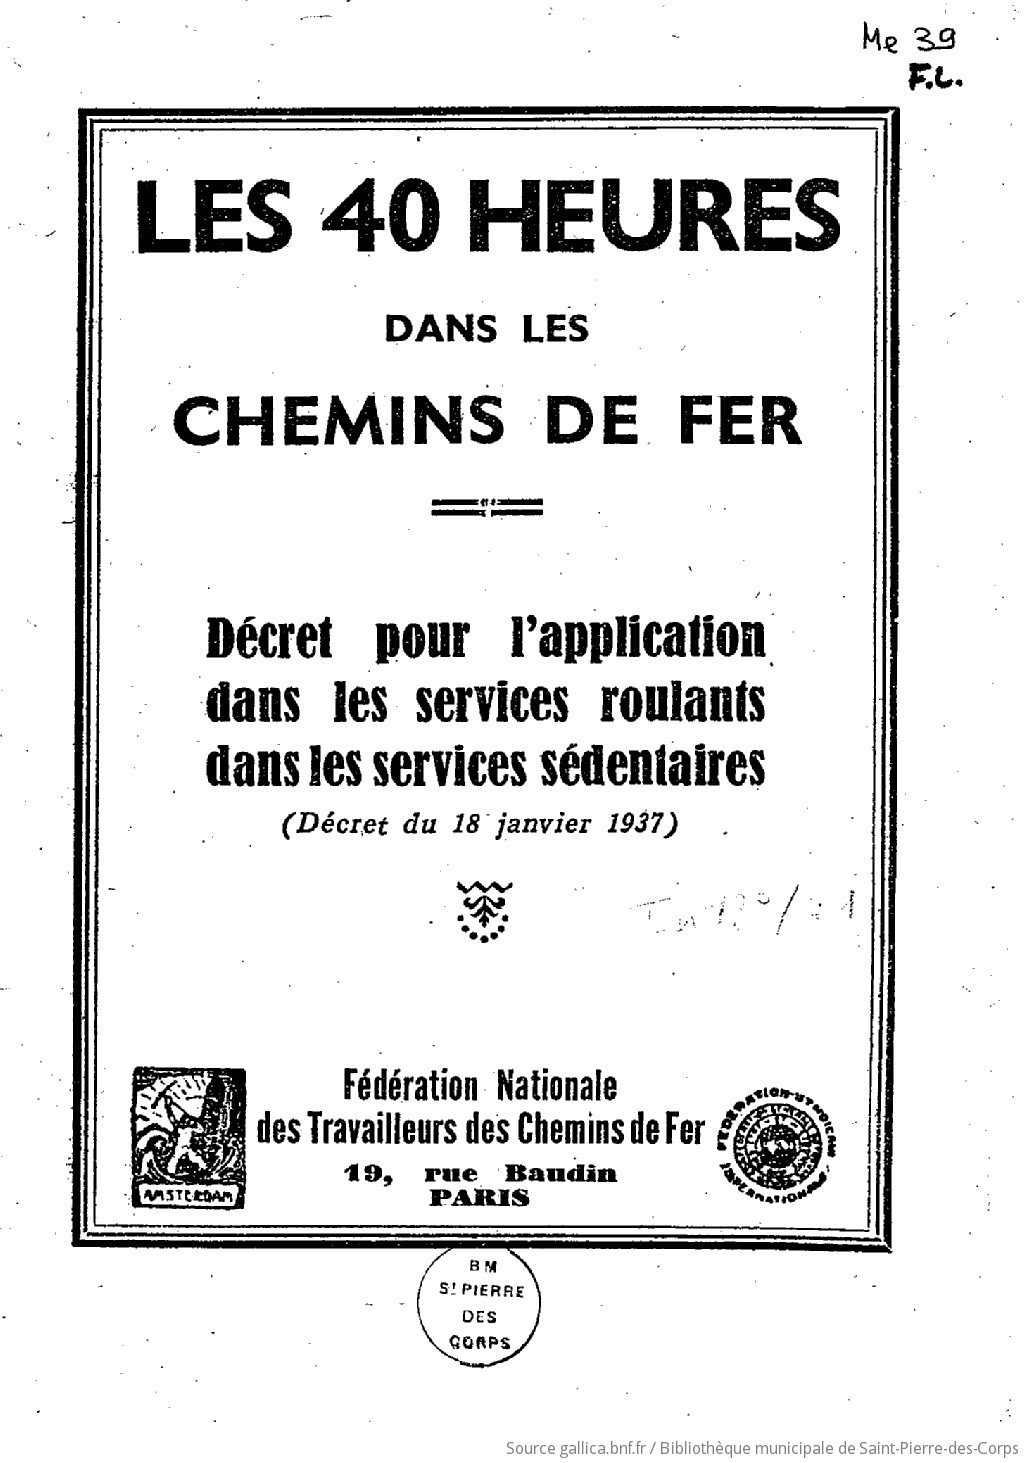 Les 40 heures dans les chemins de fer : décret pour l'application dans les services roulants dans les services sédentaires (décret du 18 janvier 1937)